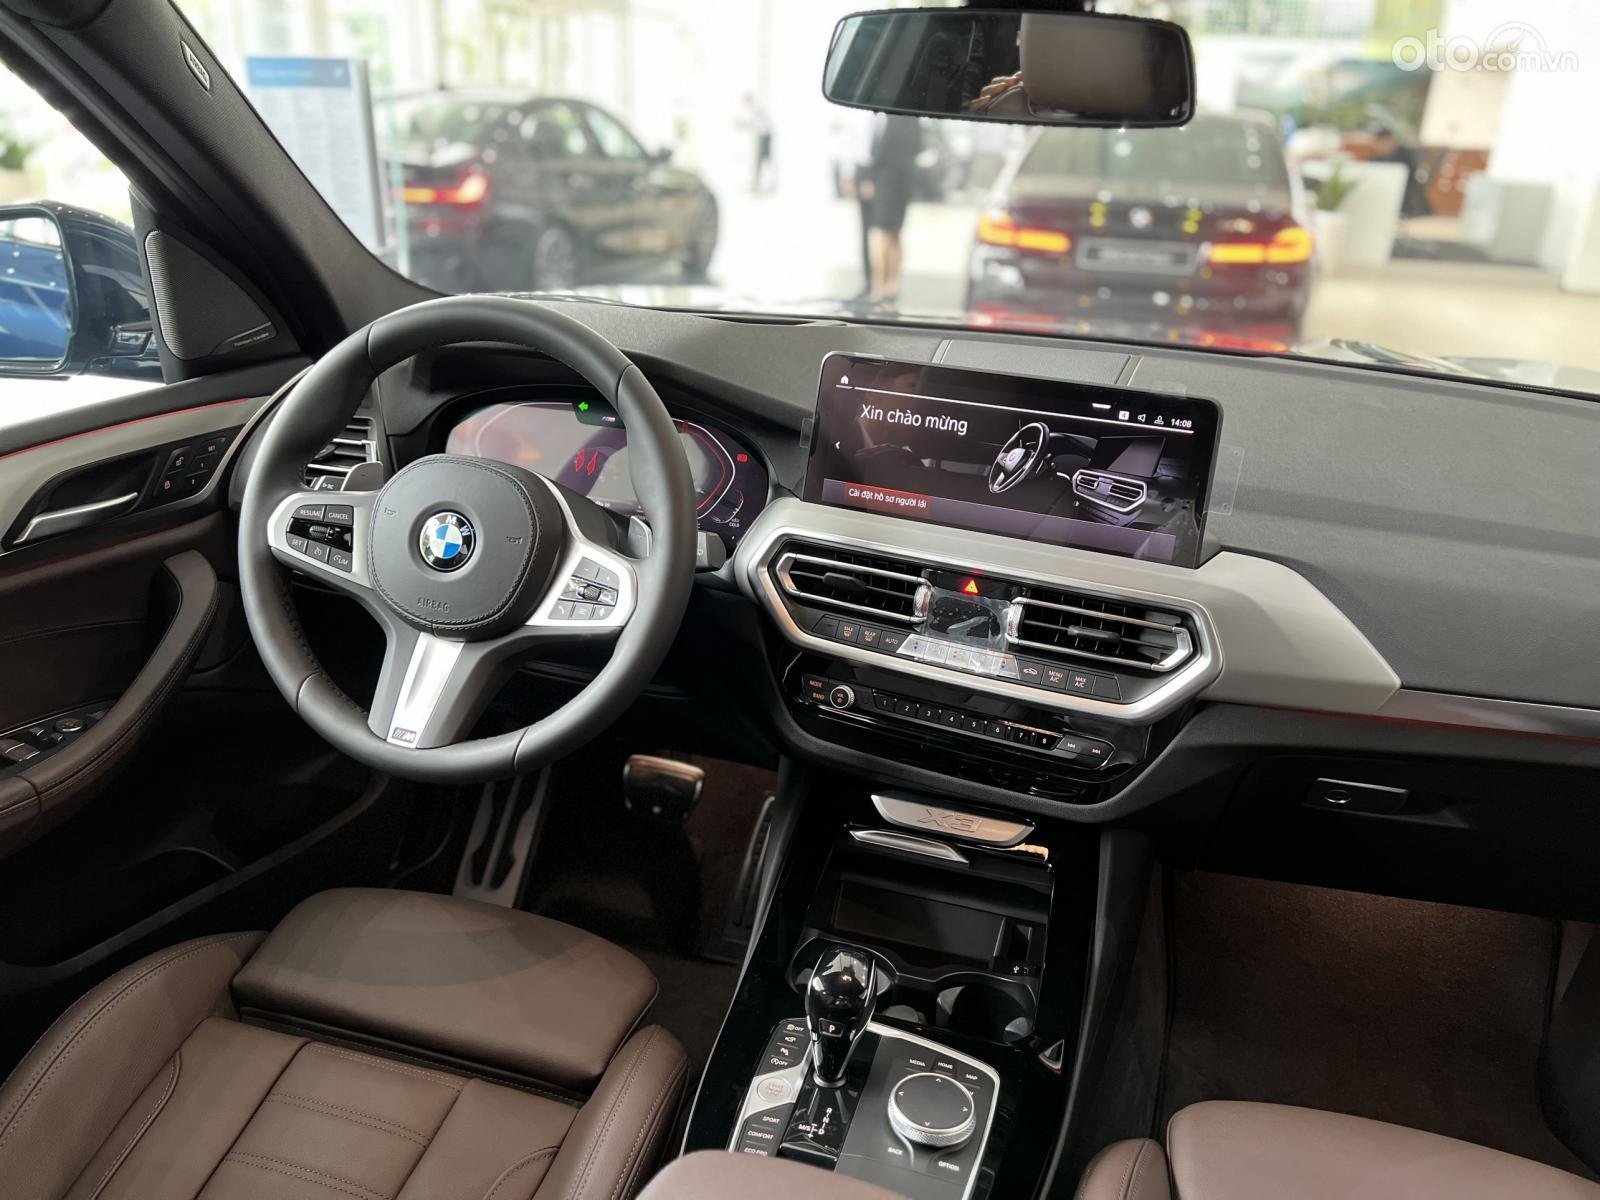 Màn hình giải trí trên xe BMW X3.